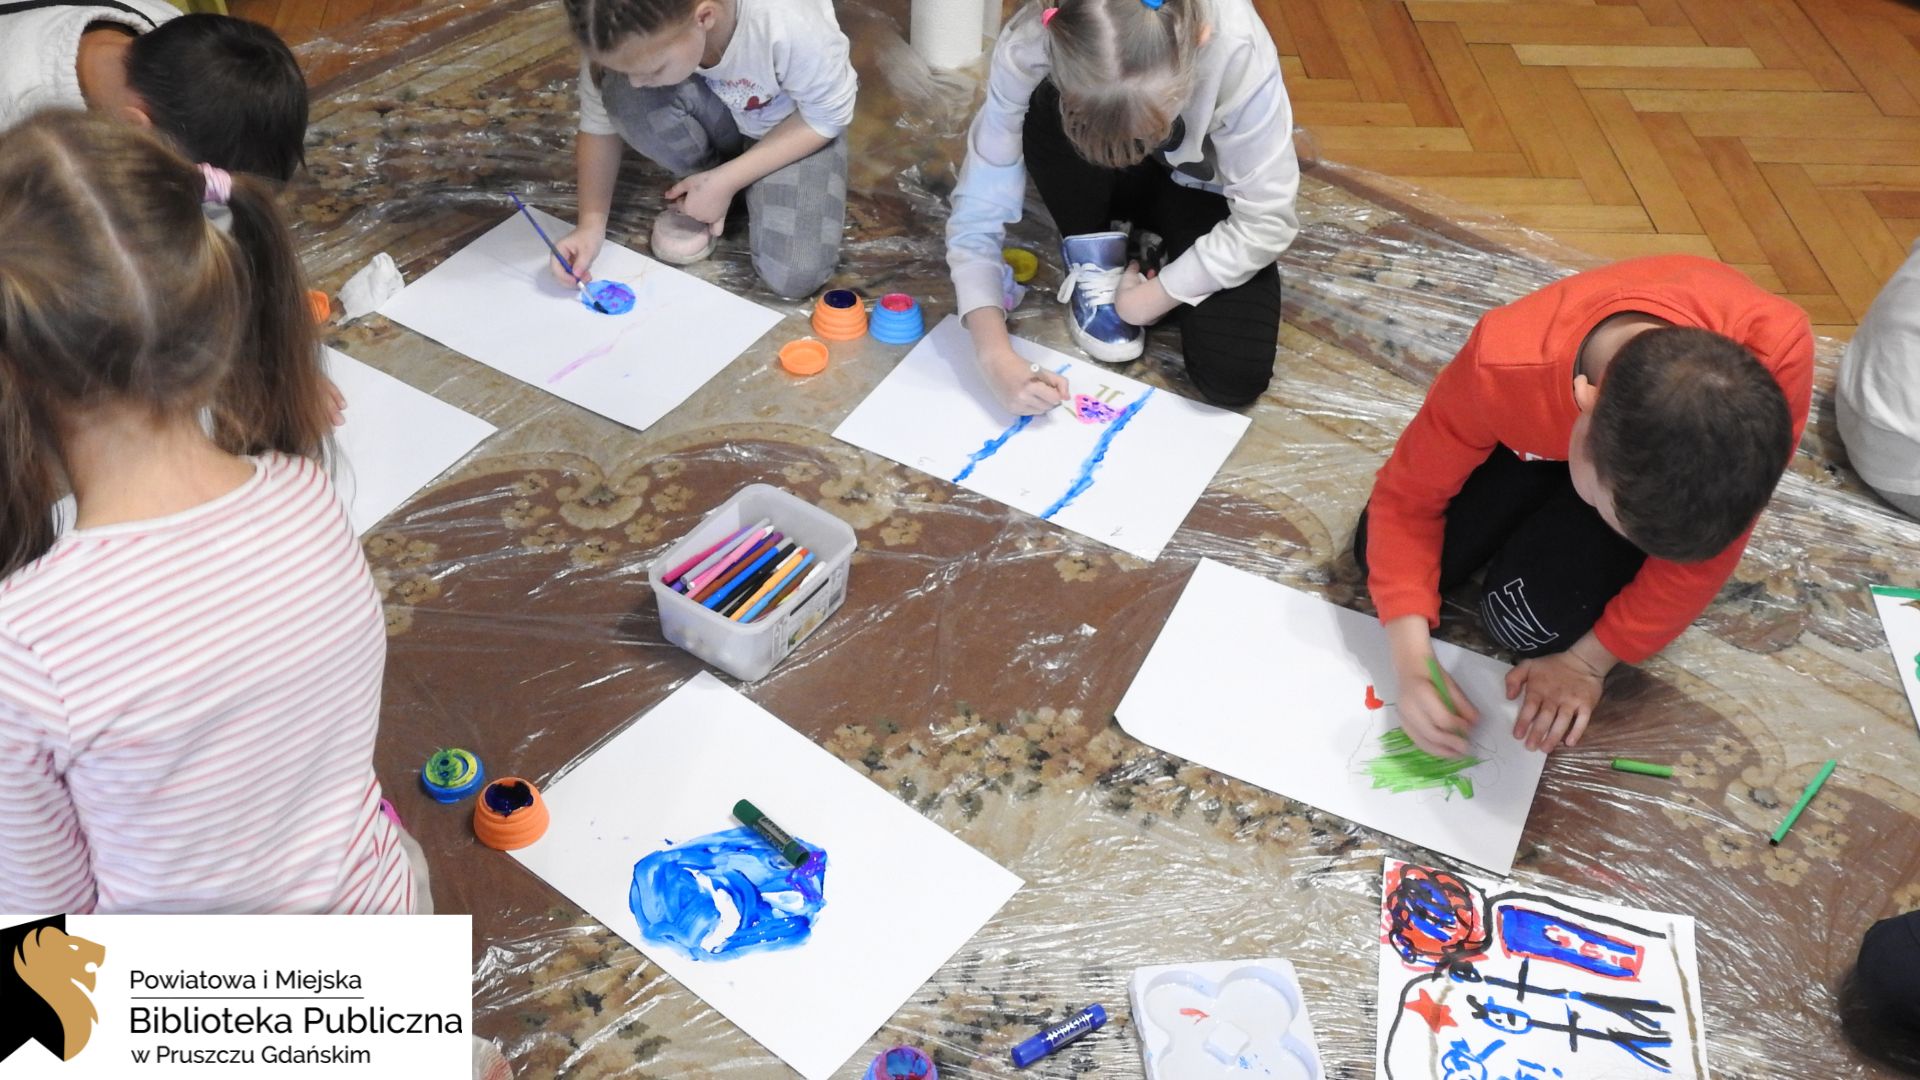 Grupa dzieci klęczy na dywanie wyłożonym przezroczystą folią. Dzieci trzymają pędzelki i malują farbami na leżących przed nimi białych kartkach formatu A3. Pomiędzy nimi znajdują się kolorowe pudełeczka z farbami oraz pudełko z flamastrami. Na kartkach utworzone są już fragmenty pracy plastycznej.